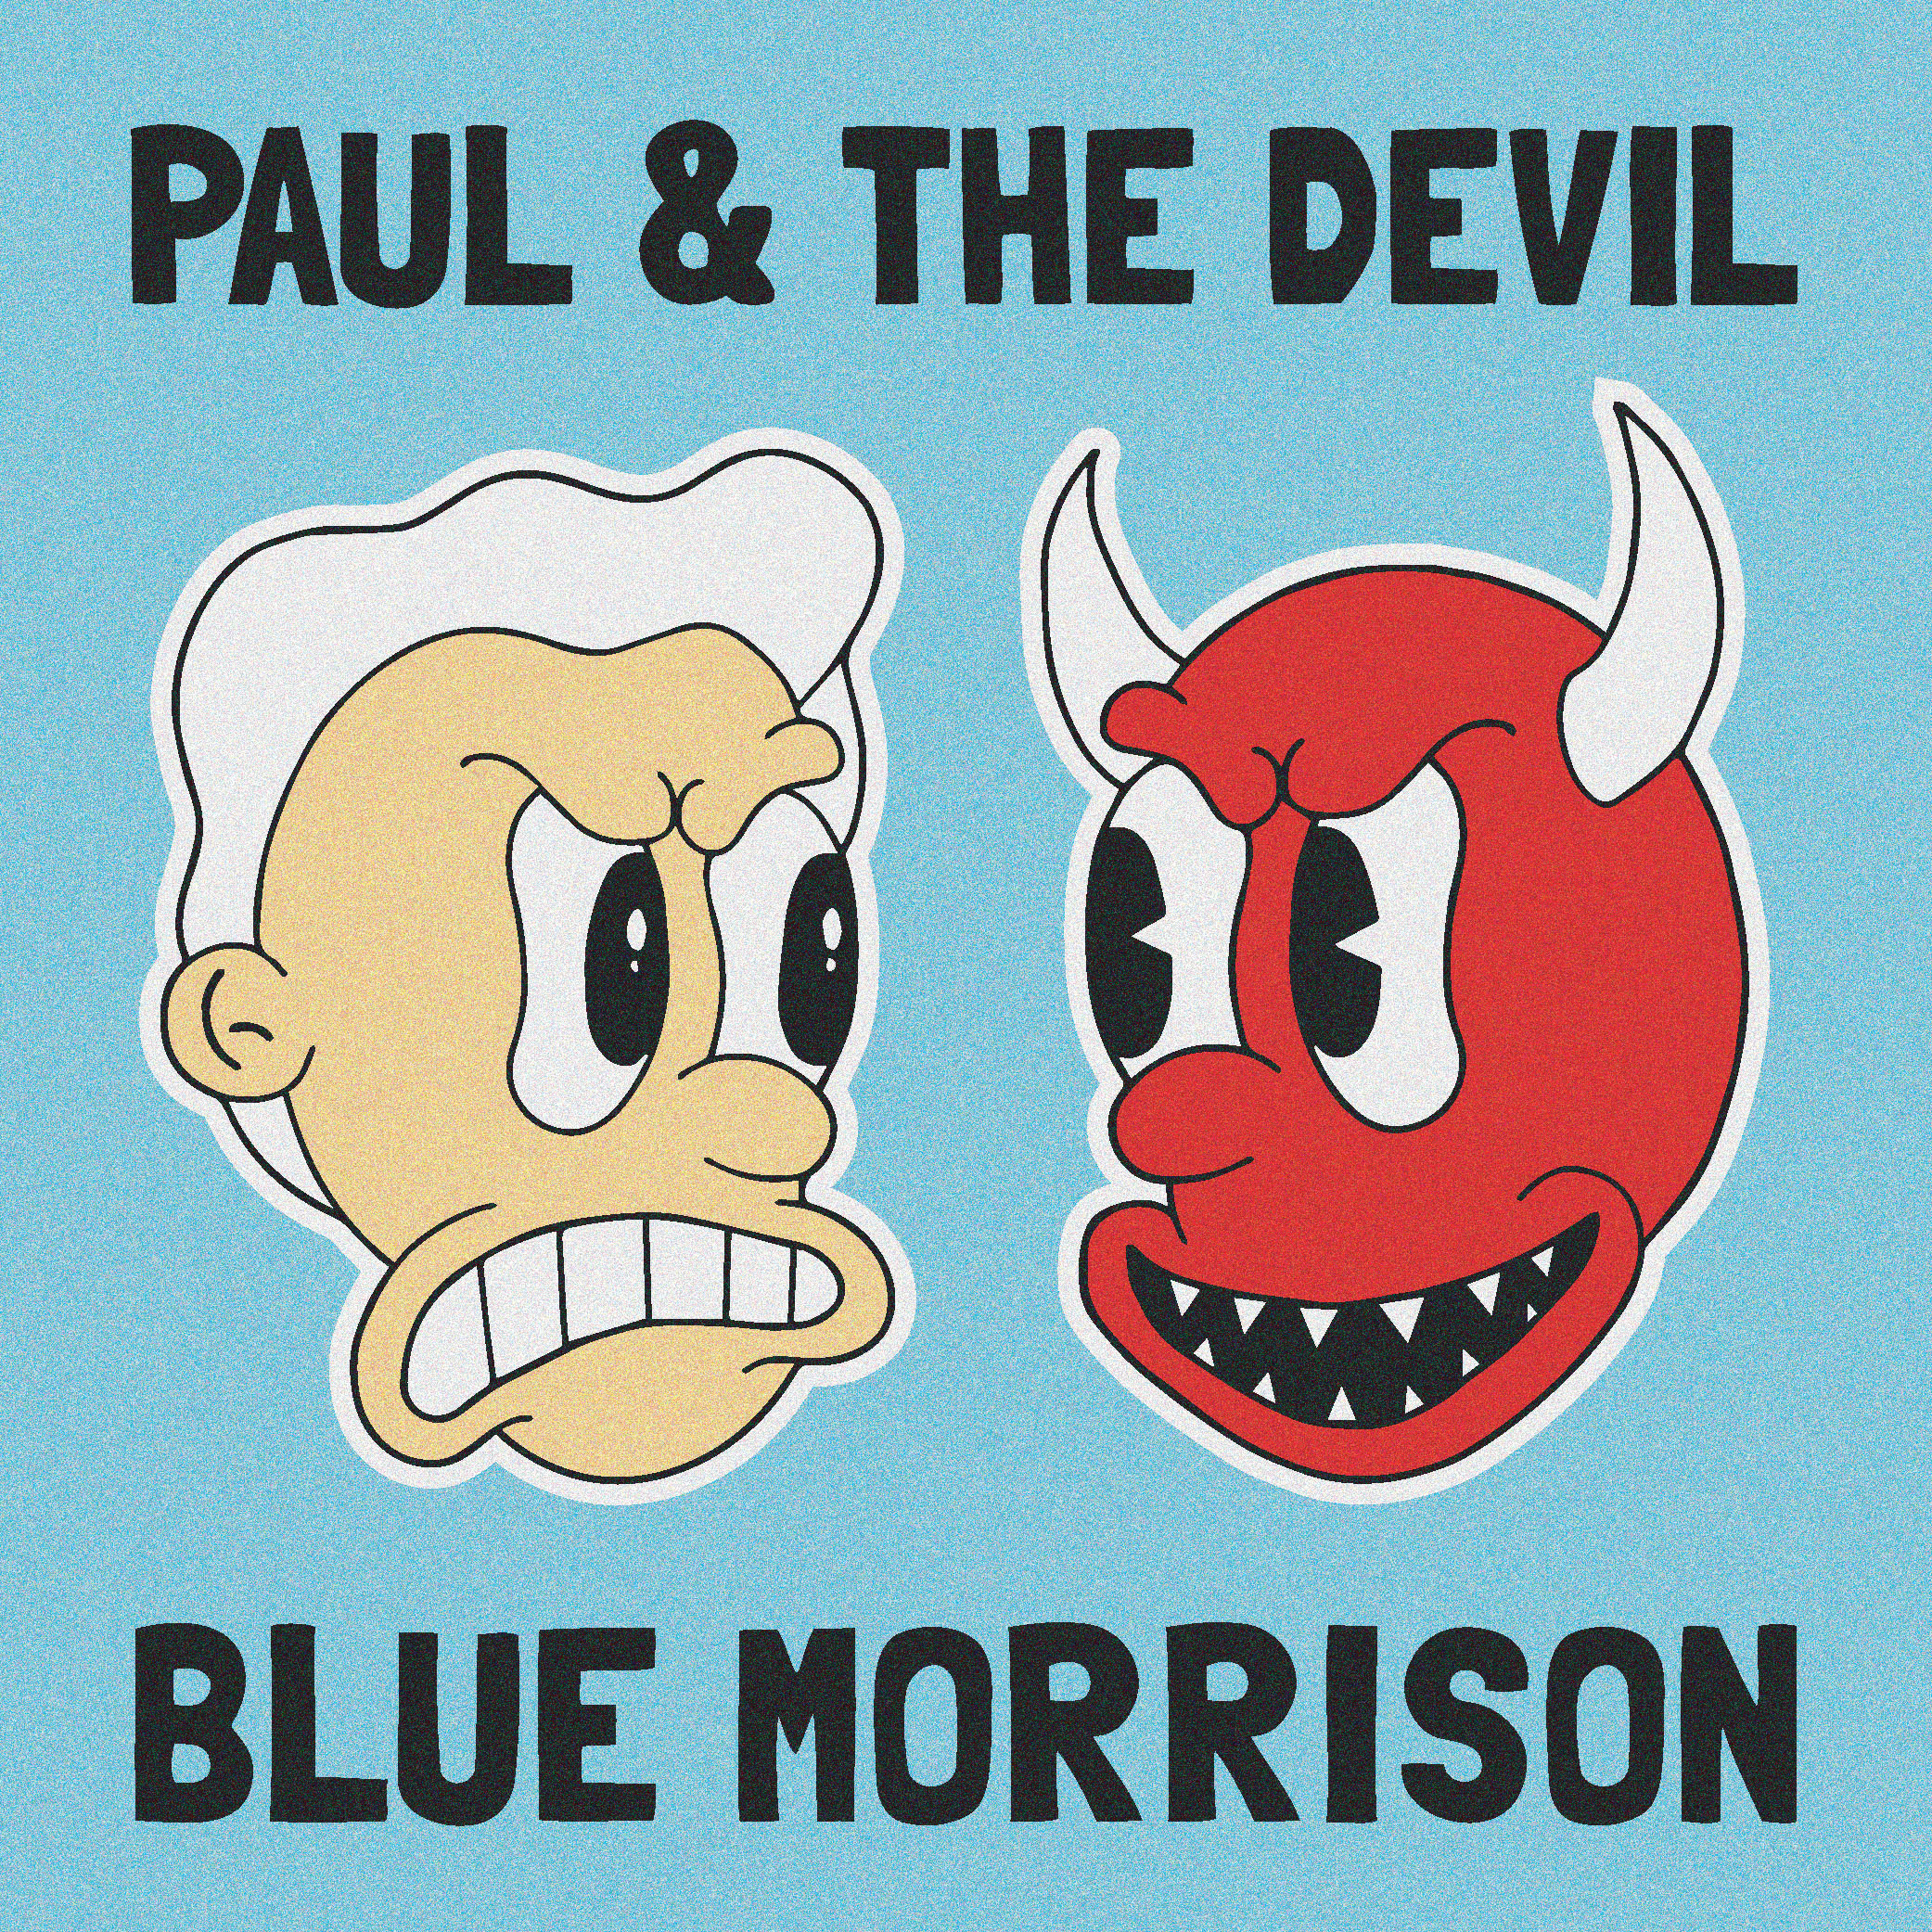 Track Premiere: “Paul & The Devil” by Blue Morrison